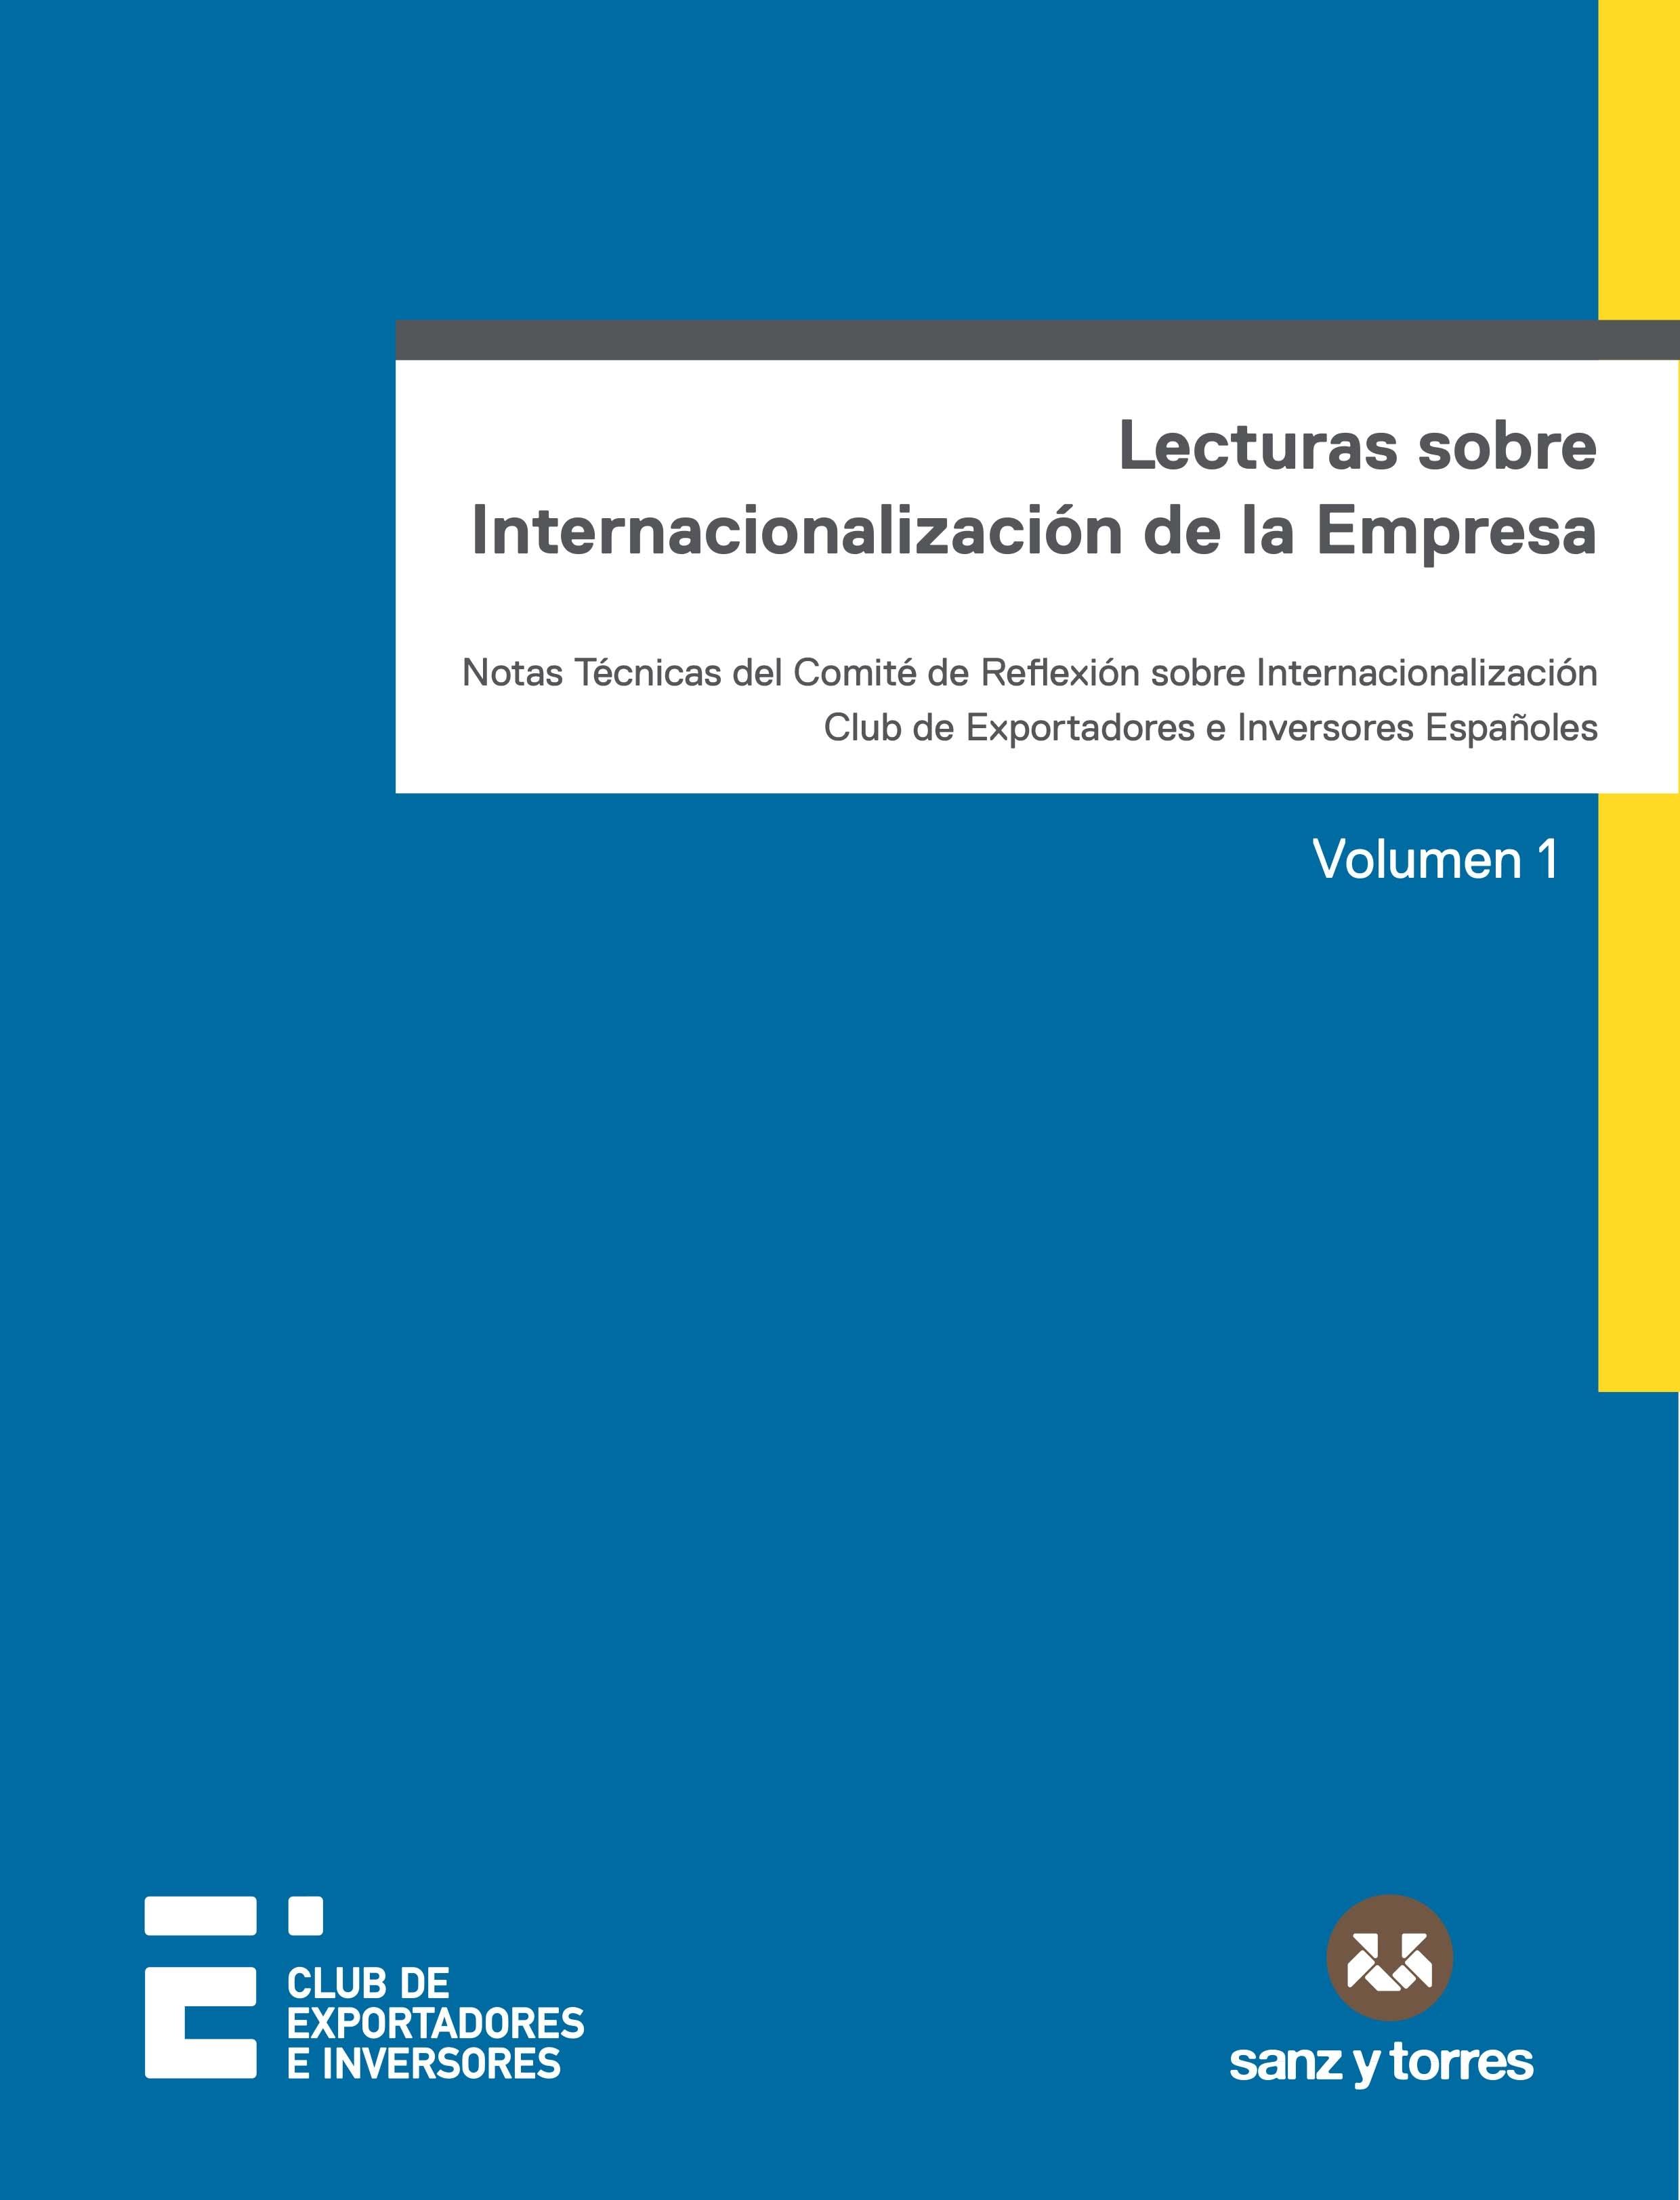 Lecturas sobre Internacionalización de la Empresa Vol.1 "Notas técnicas del comité de reflexión sobre internacionalización Club de Exportadores e Inversores Espa"